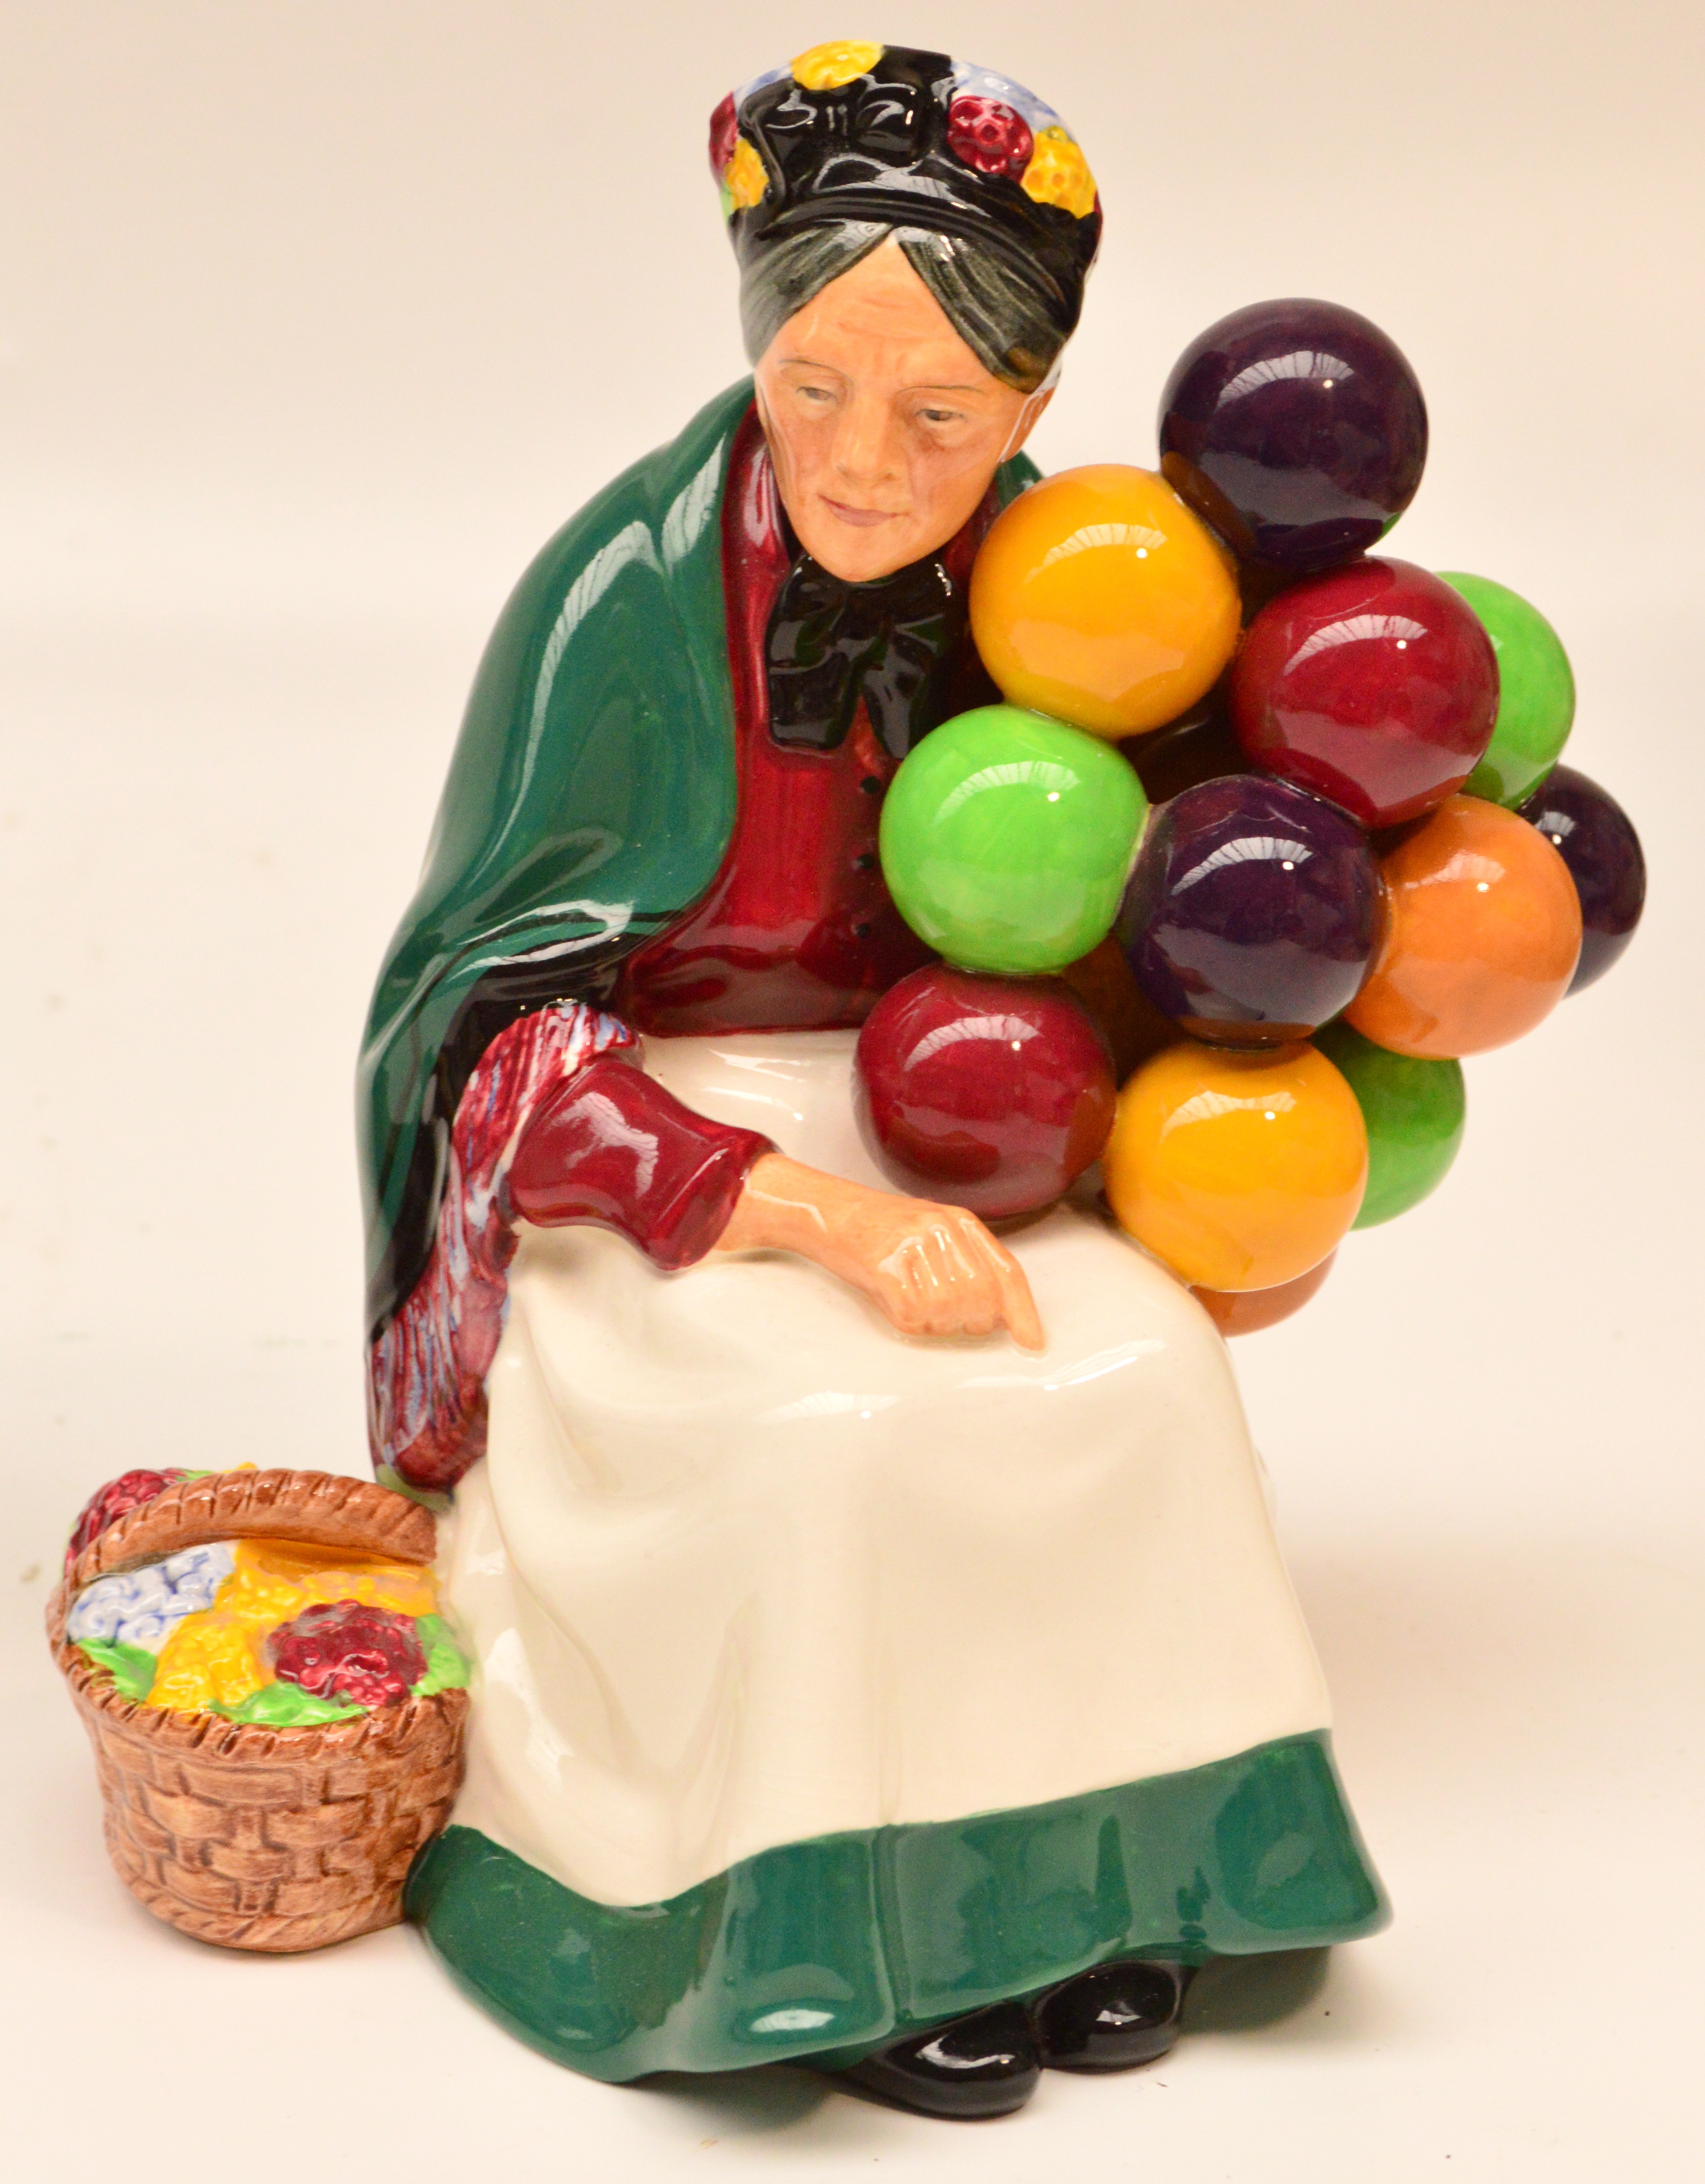 A Royal Doulton figurine HN1315 "The Old Balloon Seller".